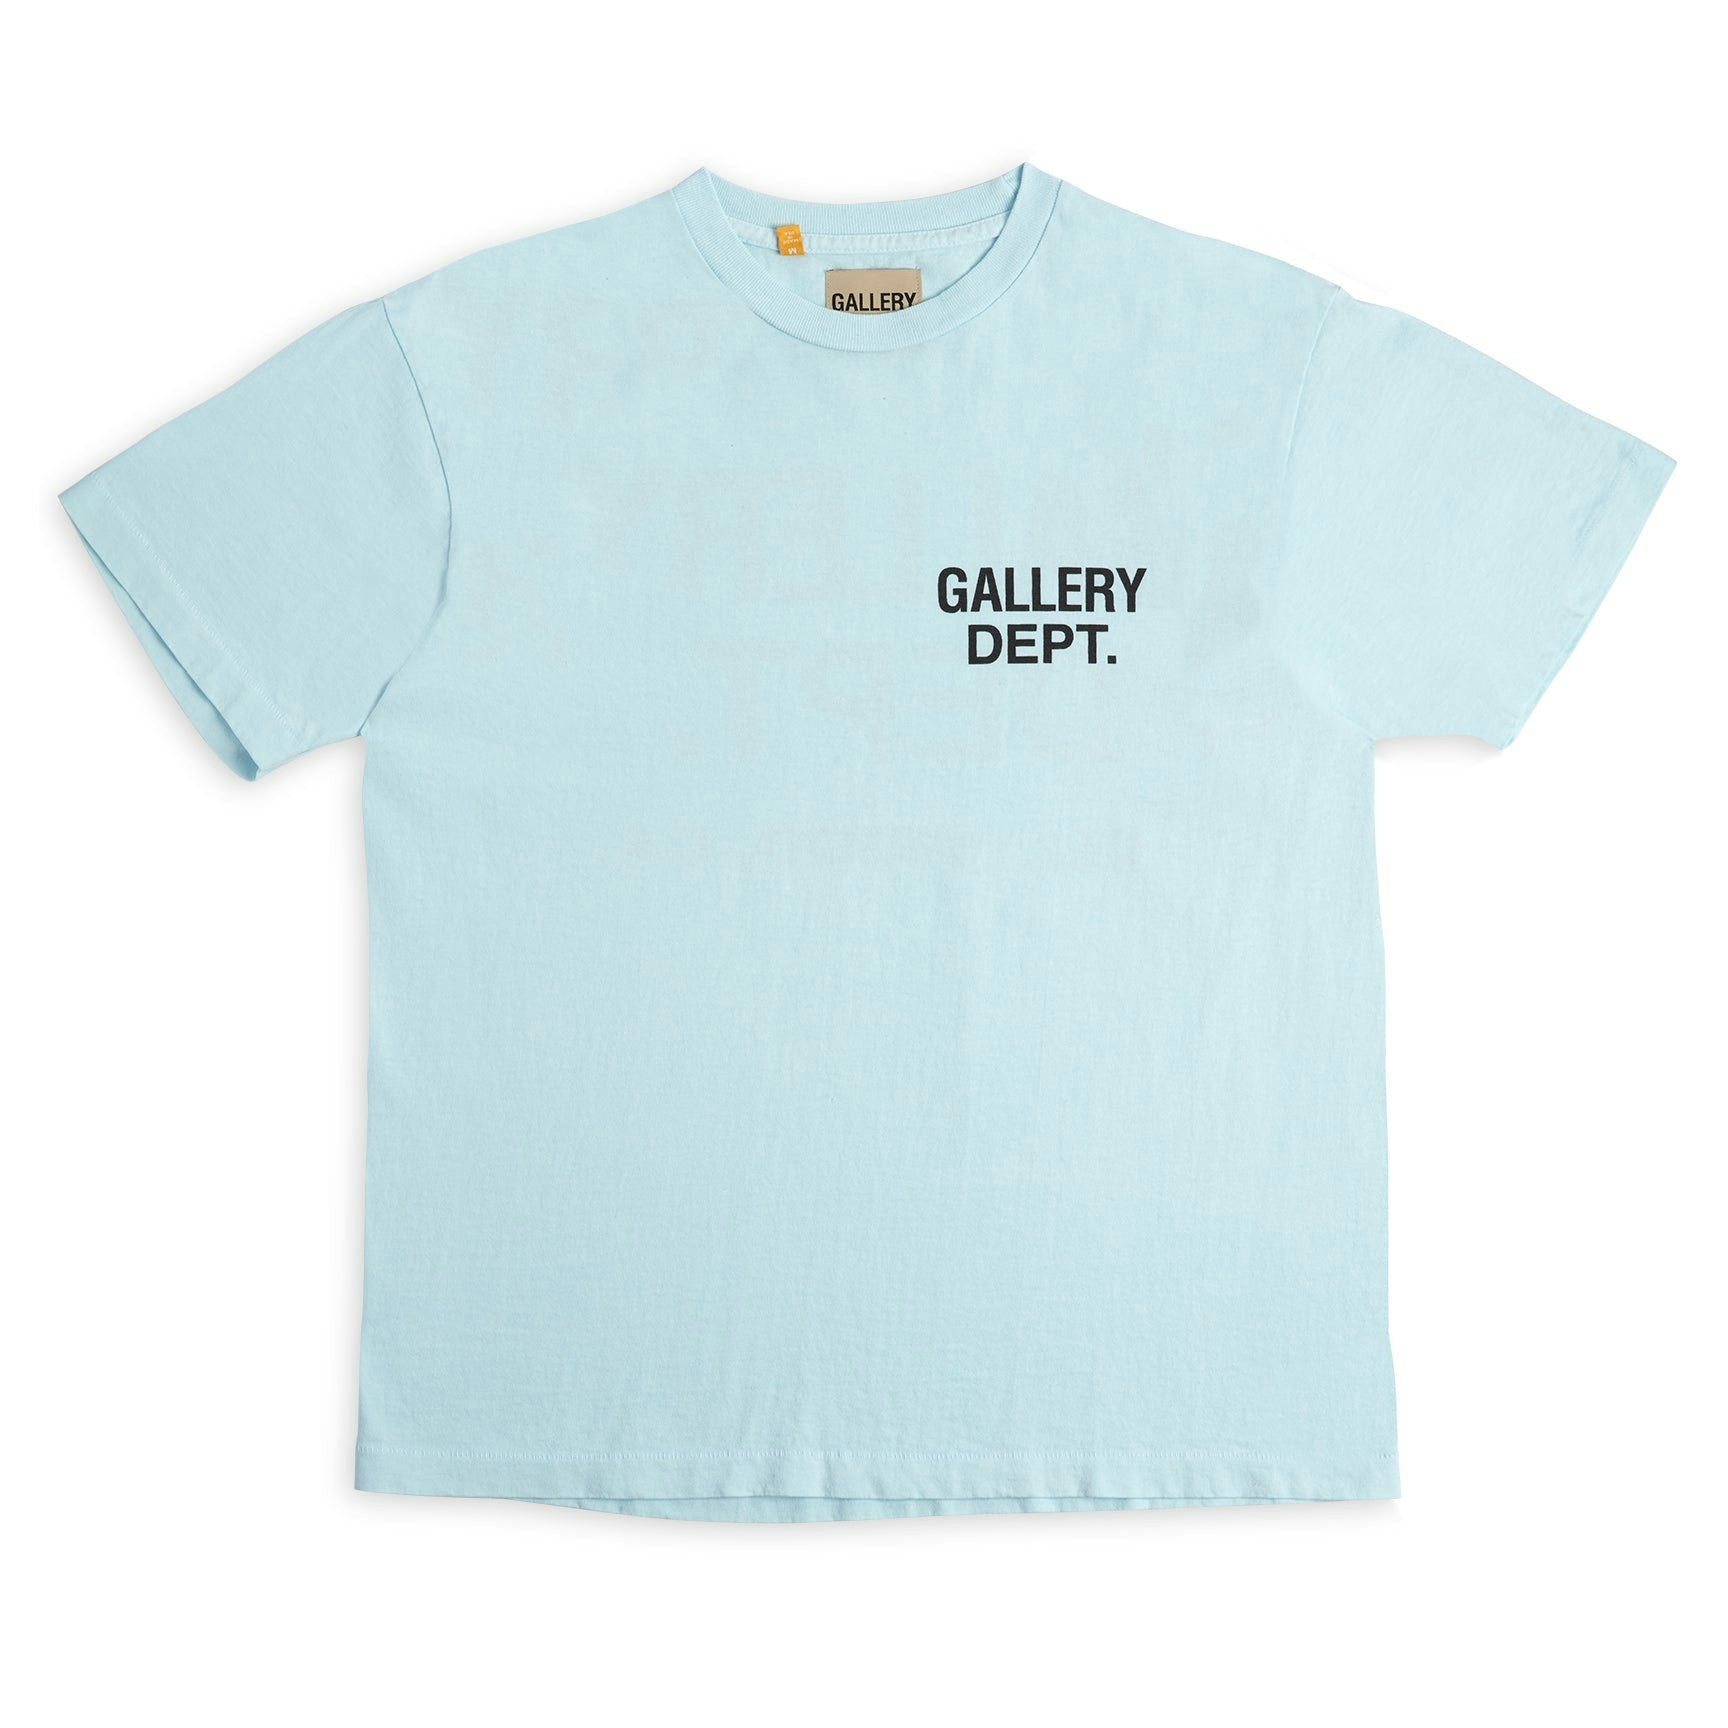 Gallery Dept. Souvenir T-shirt Baby Blue -